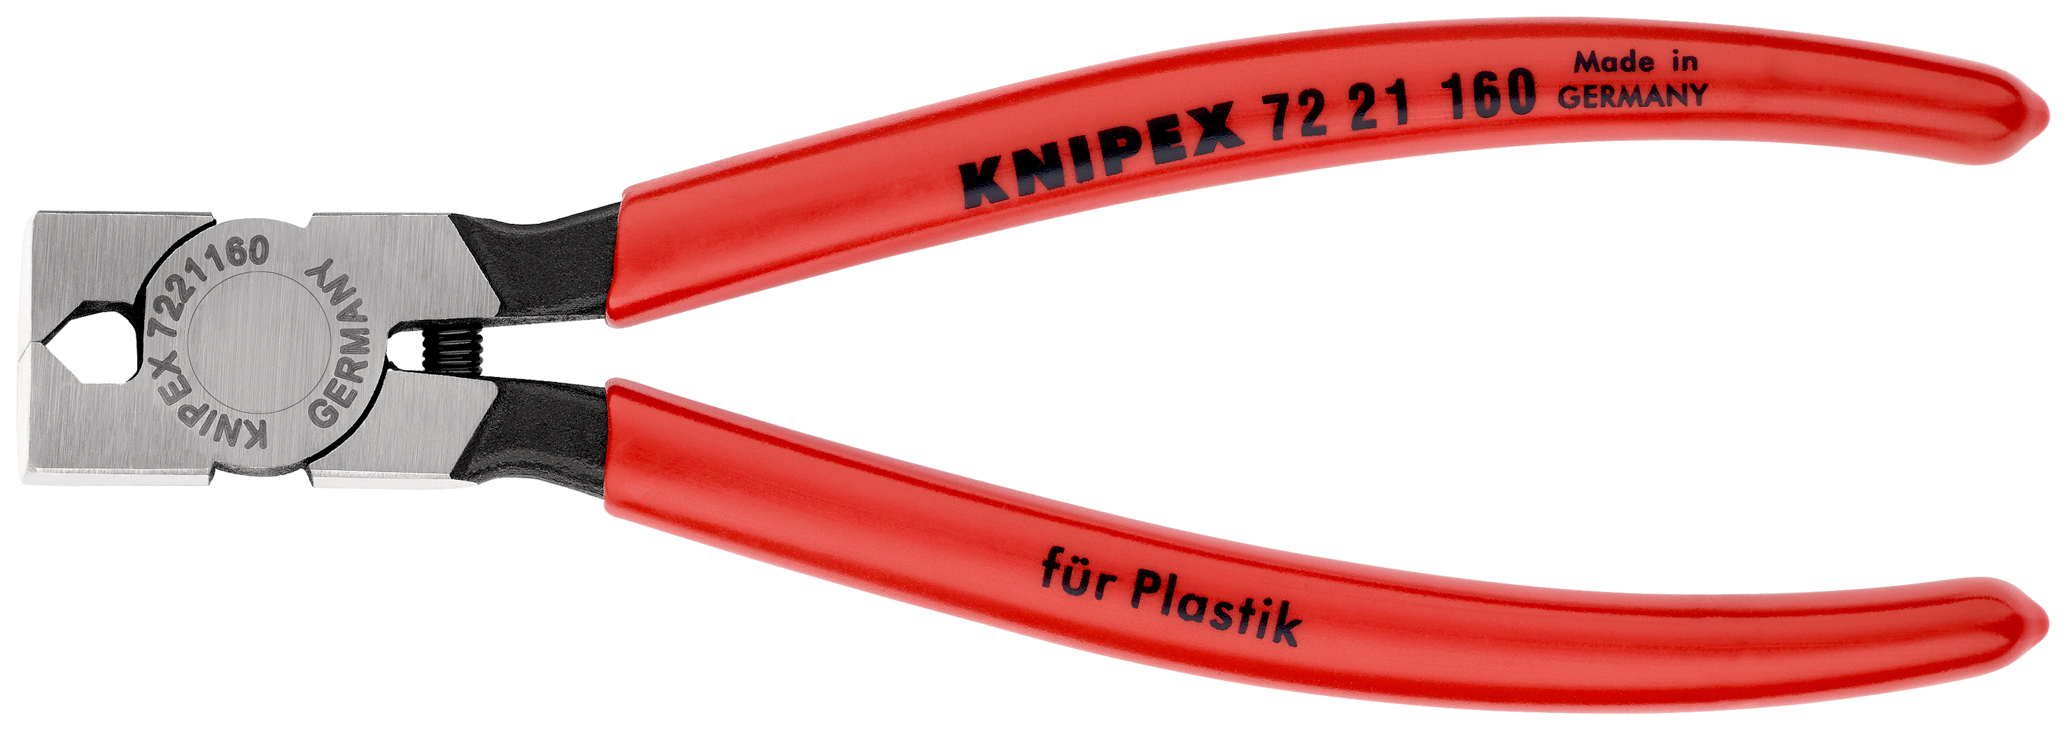 Pince cpte cote pour plastique 160mm 85° KNIPEX - 72 21 160